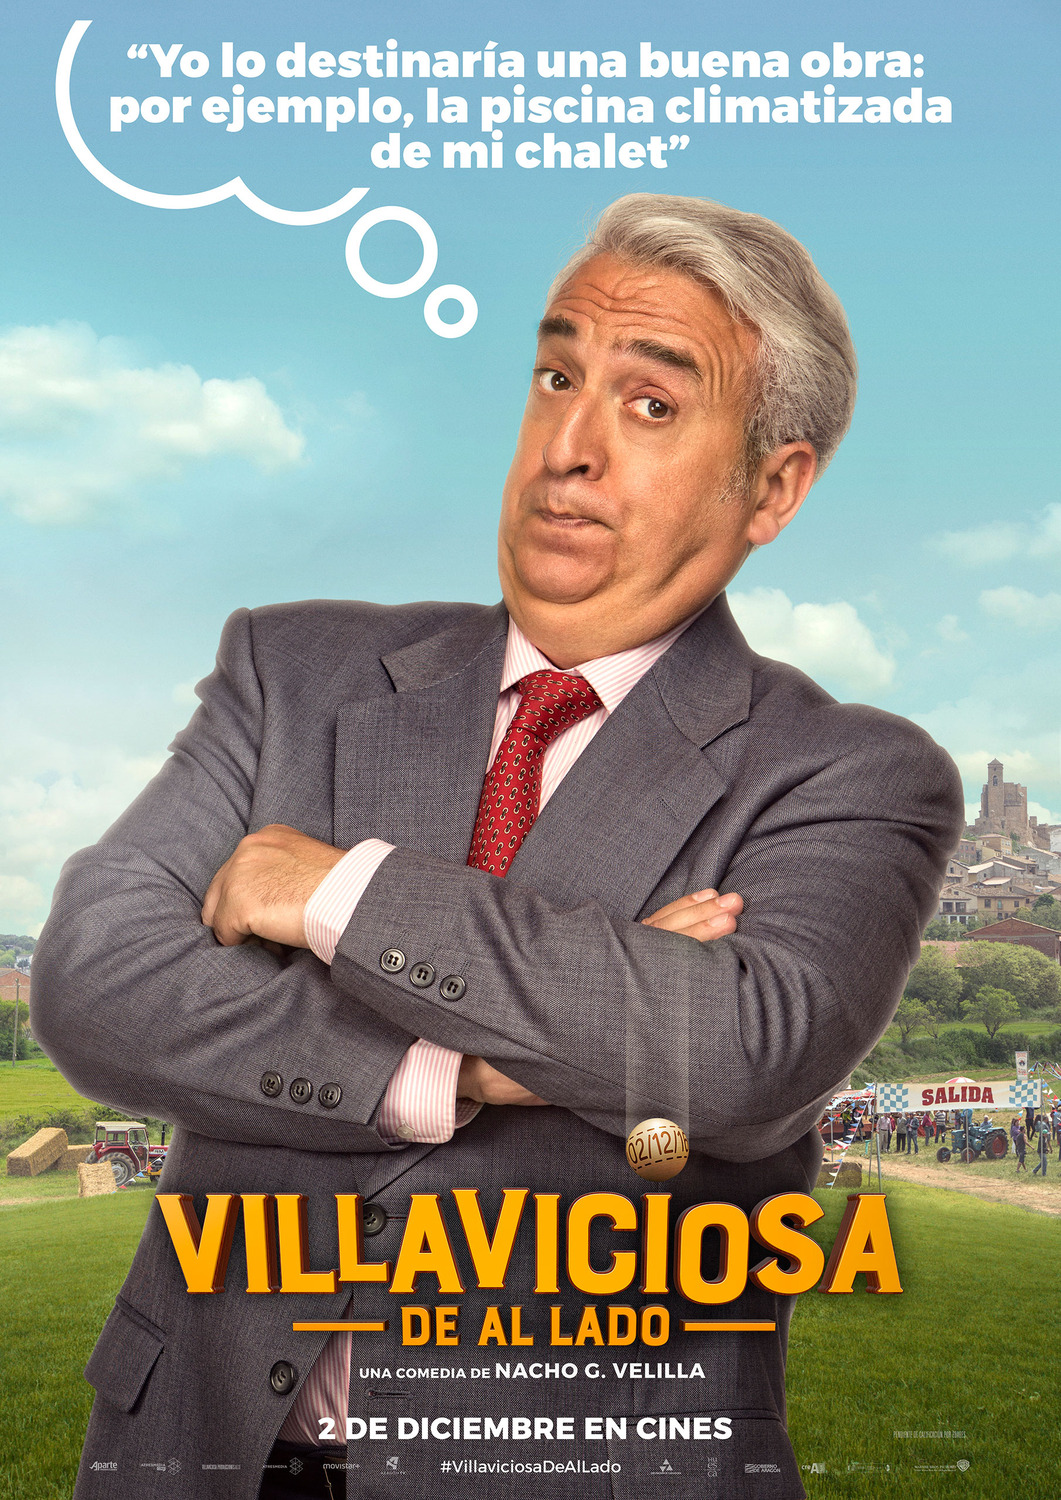 Extra Large Movie Poster Image for Villaviciosa de al lado (#6 of 8)